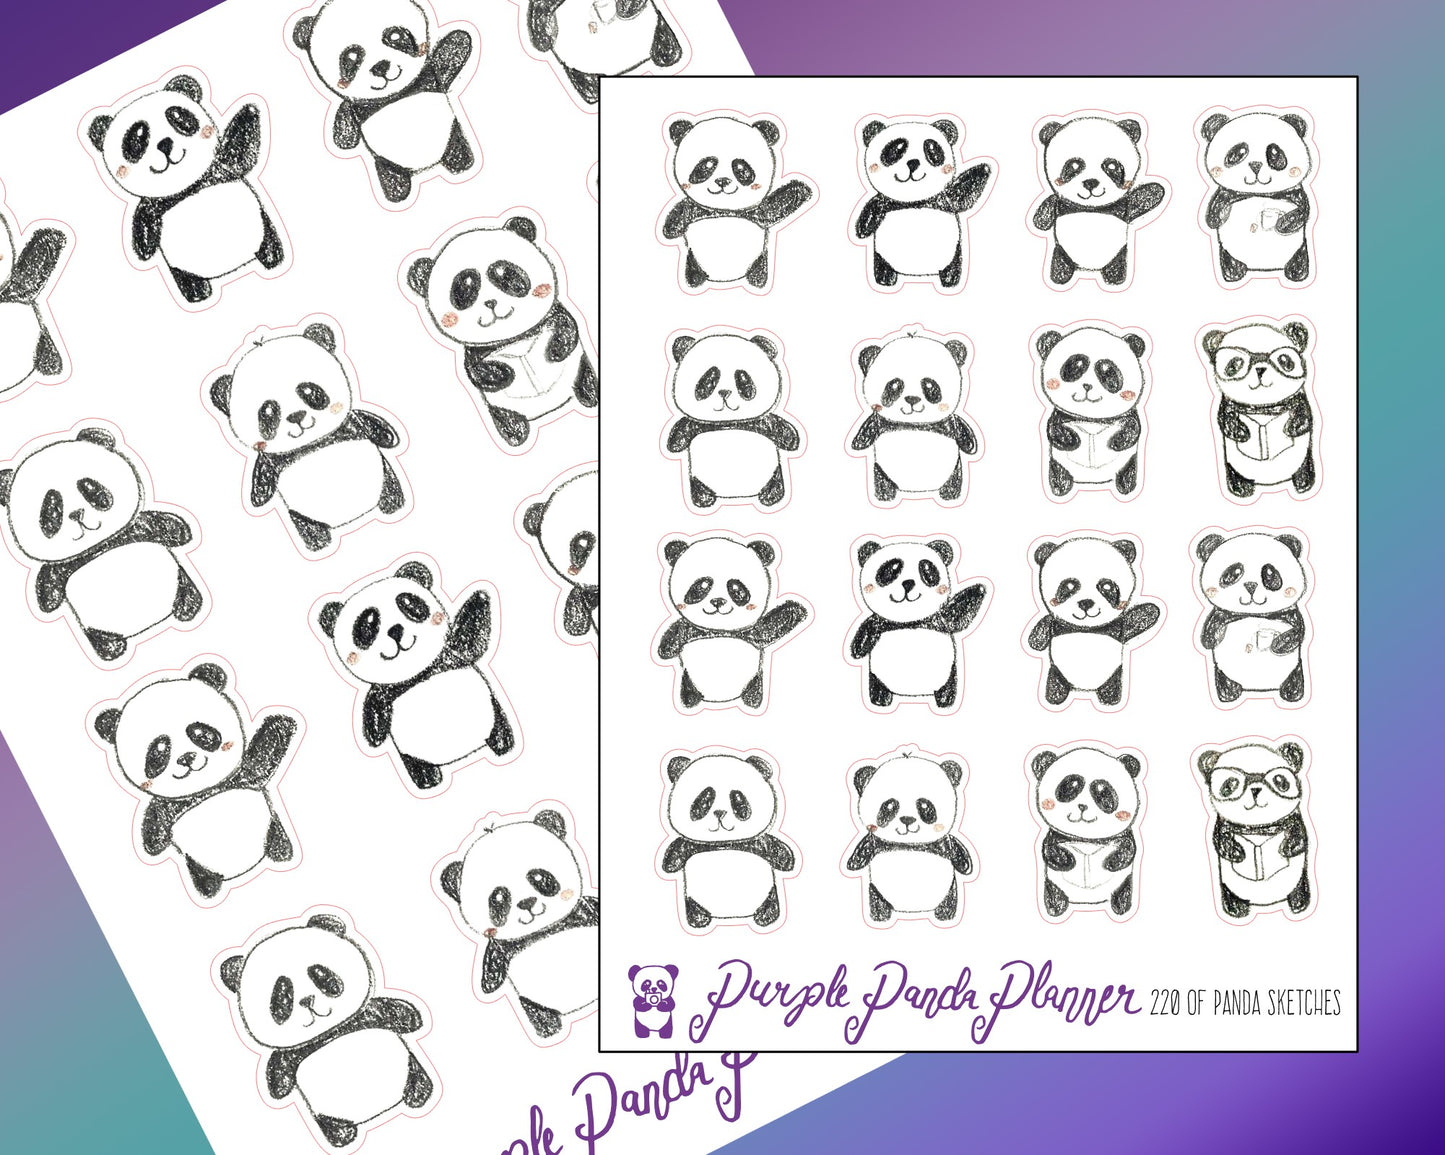 OG Panda Sketches |220|